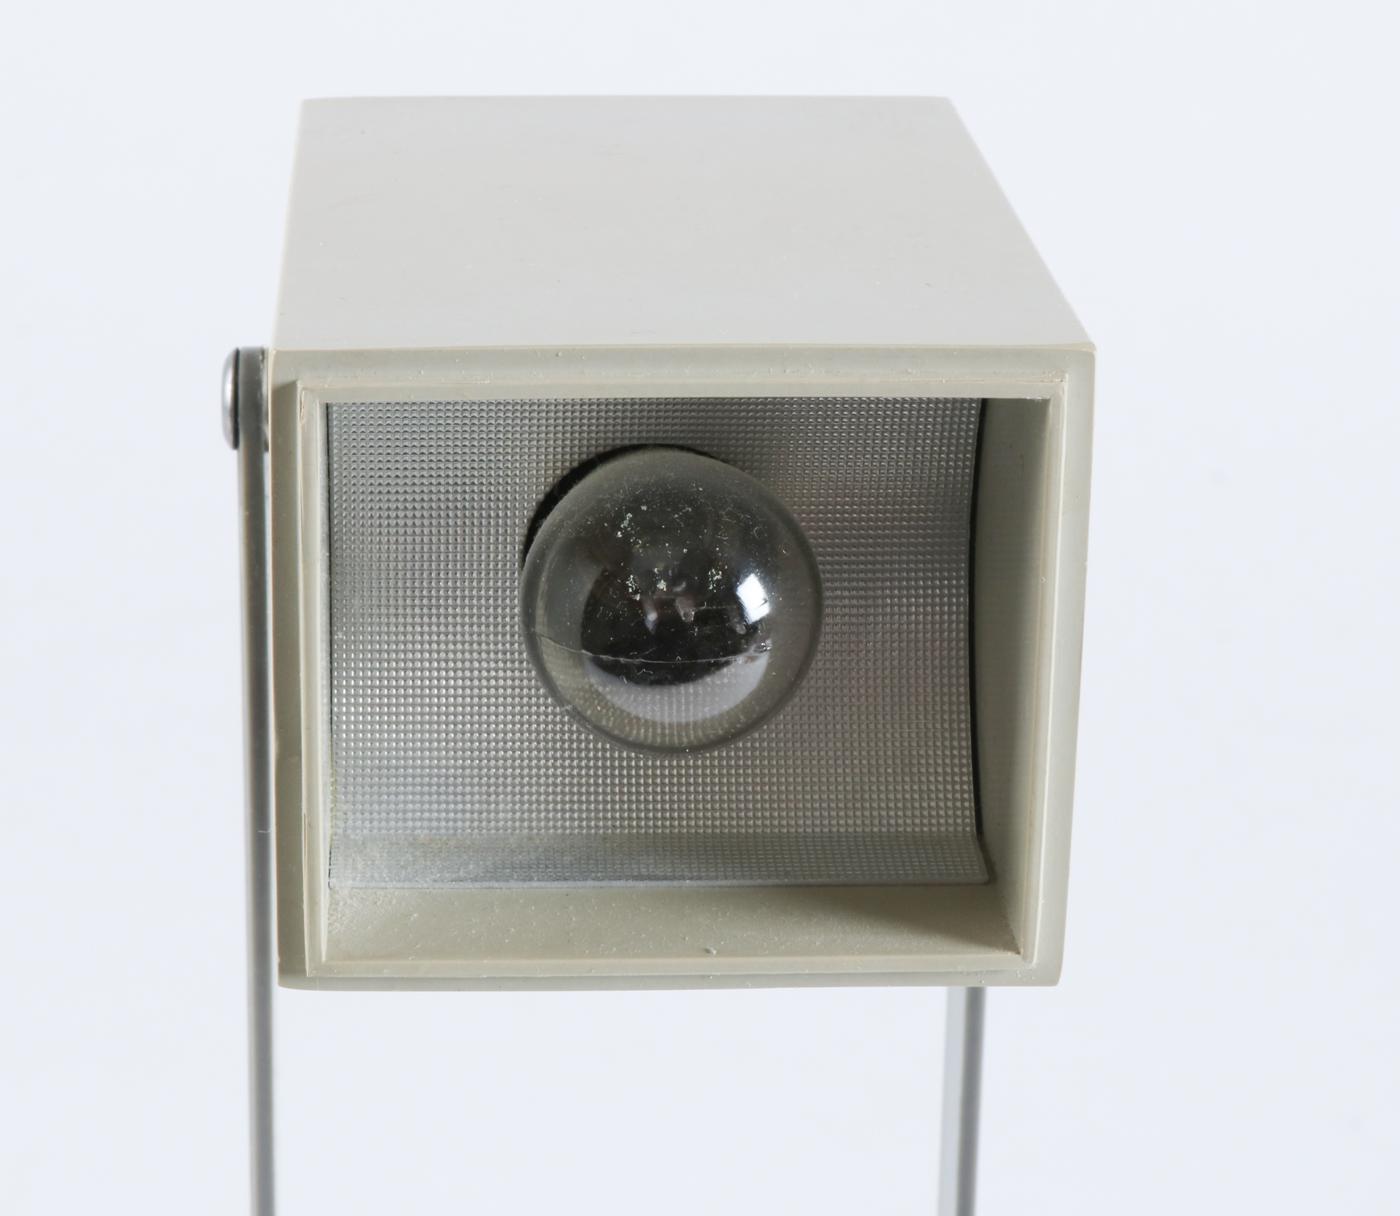 Rare lampe Lampetit conçue par Verner Panton pour Louis Poulsen en 1966. Une petite lampe compacte aux formes rectangulaires qui était en avance sur son temps. Cette lampe est souvent attribuée à l'équipe de design de Louis Poulsen, mais après la